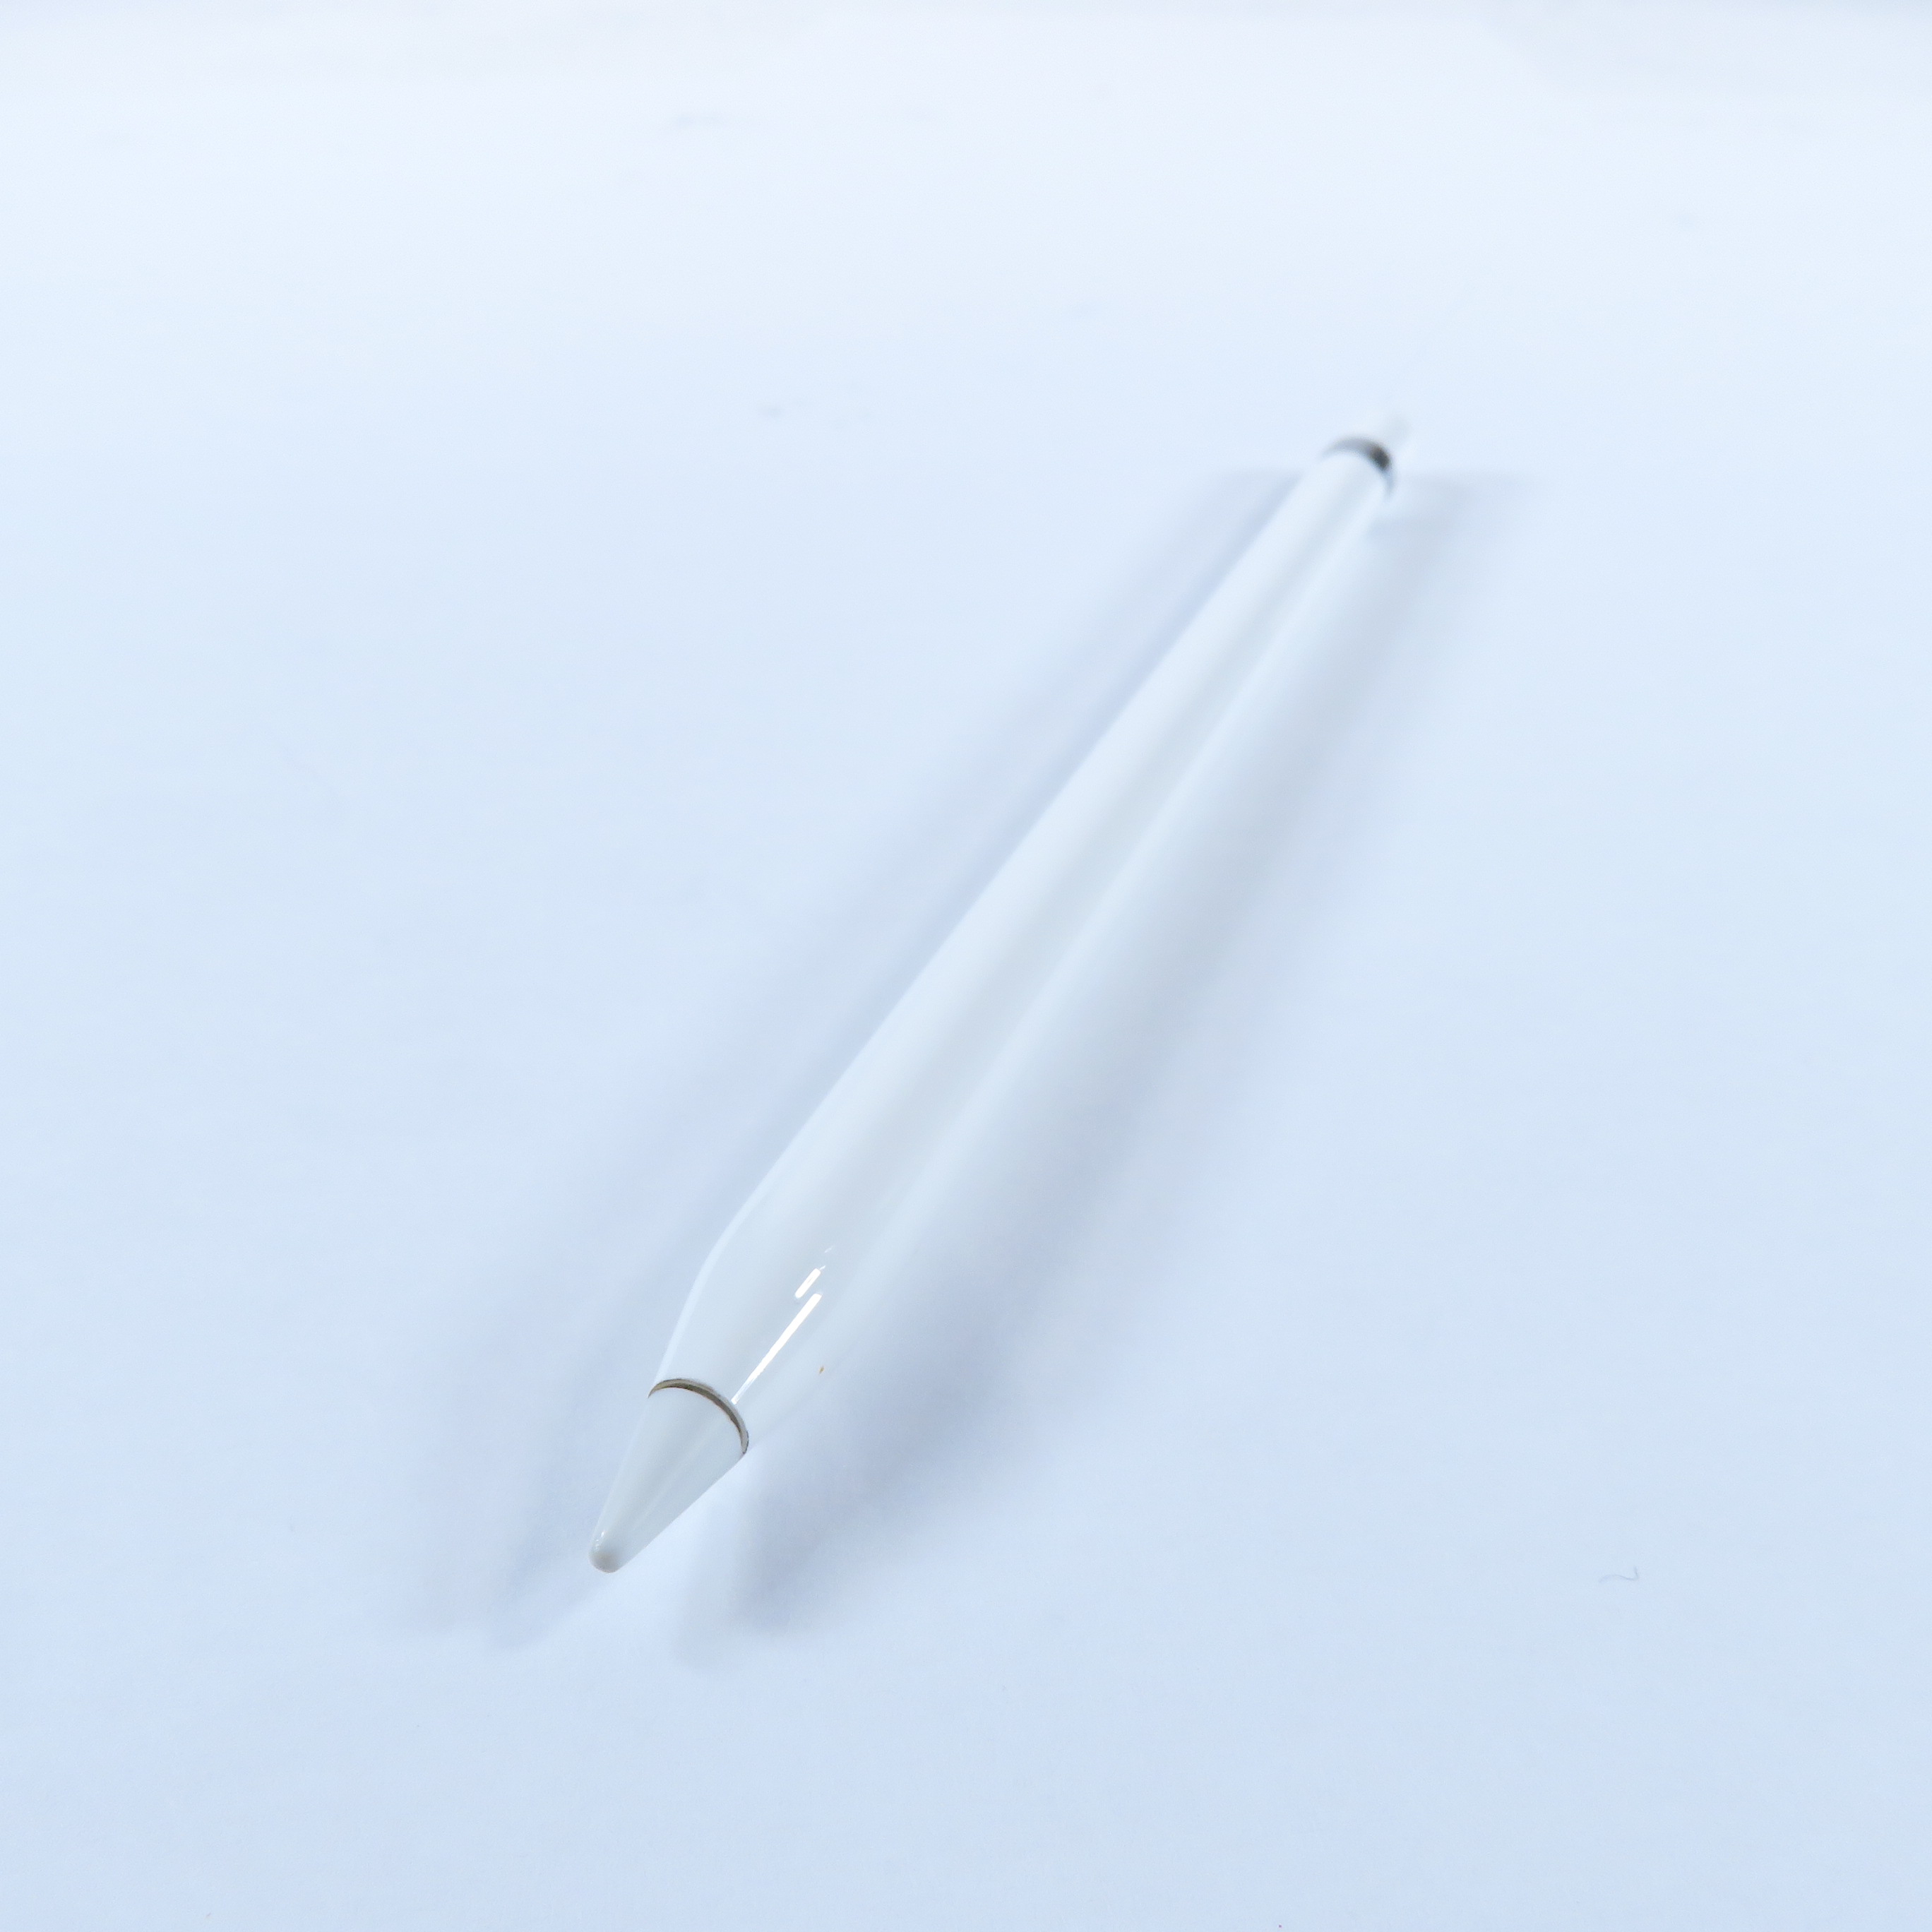 Apple Pencil (1st Generation) - MK0C2AM/A for sale online